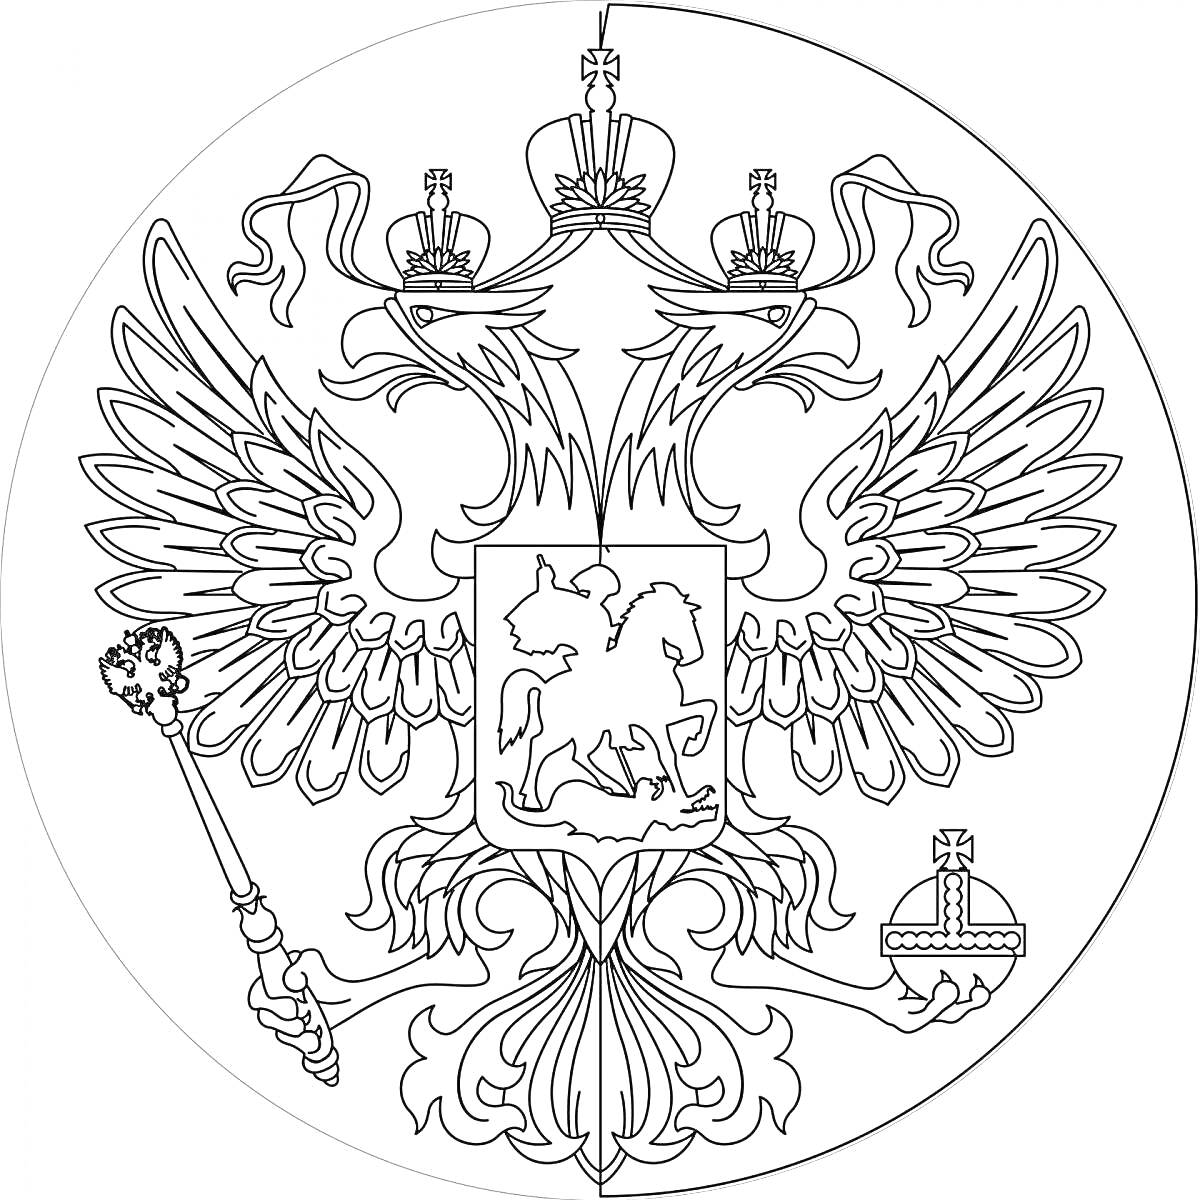 Раскраска Герб России с двуглавым орлом, держащим скипетр и державу, с изображением Святого Георгия Победоносца на щите, увенчанного тремя коронами и лентами.